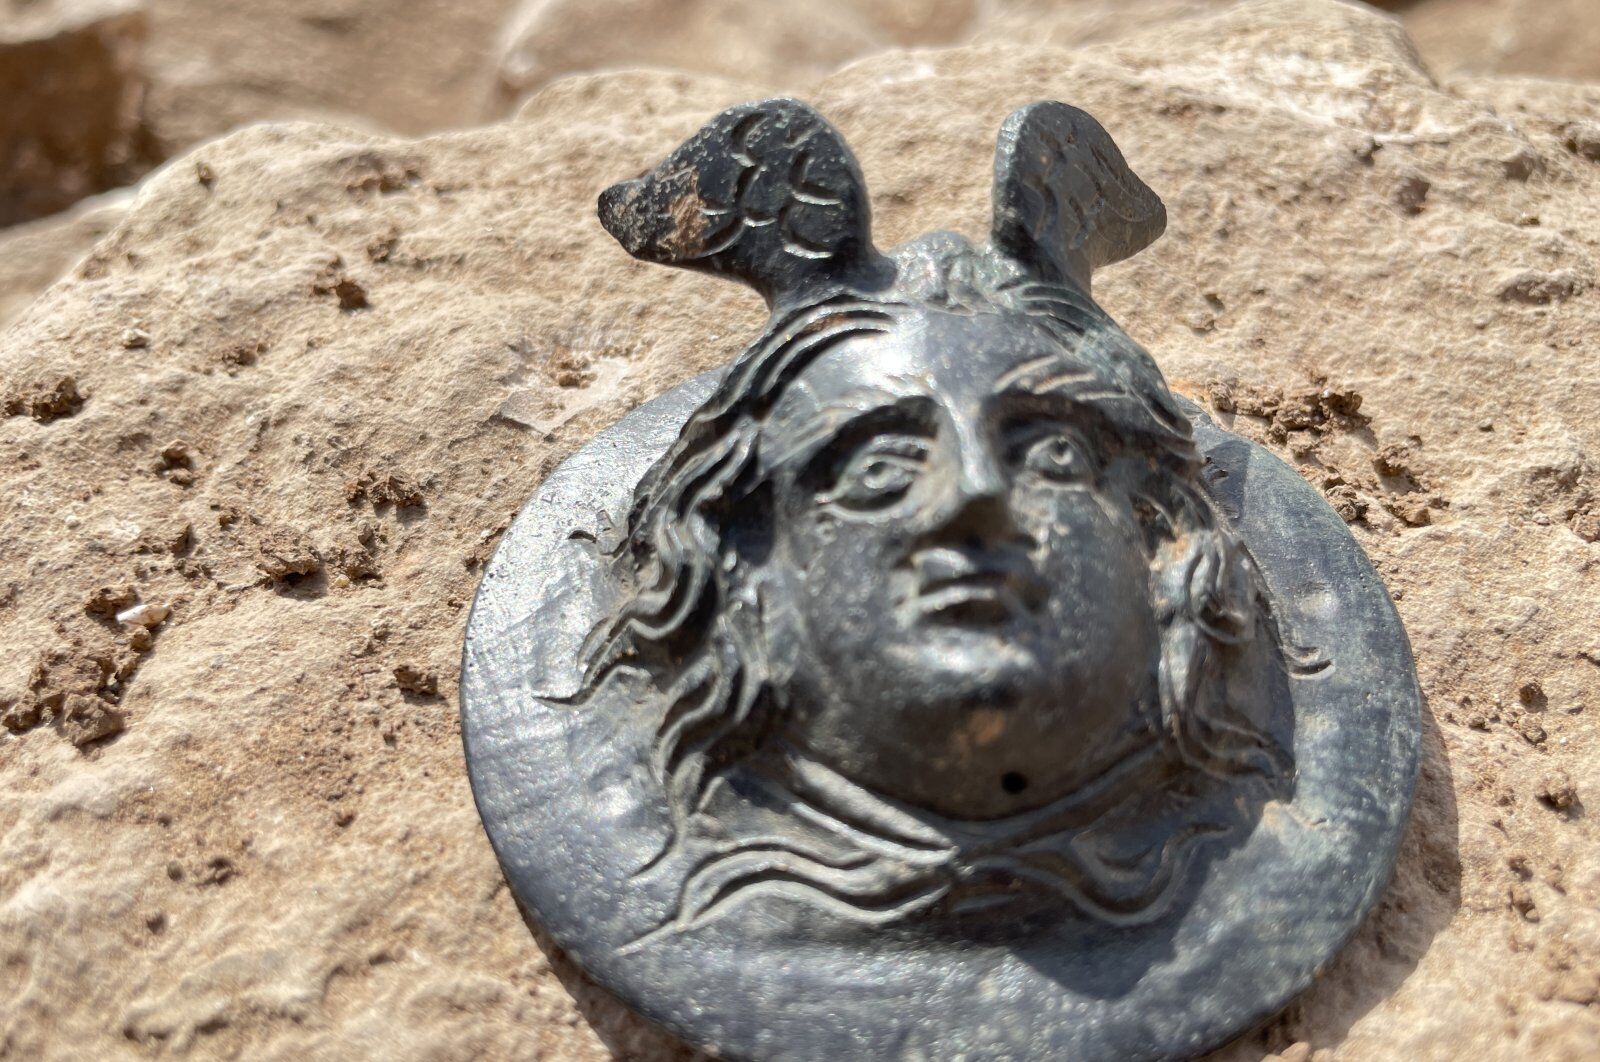 Археологи раскопали 1800-летнюю военную медаль с головой горгоны Медузы